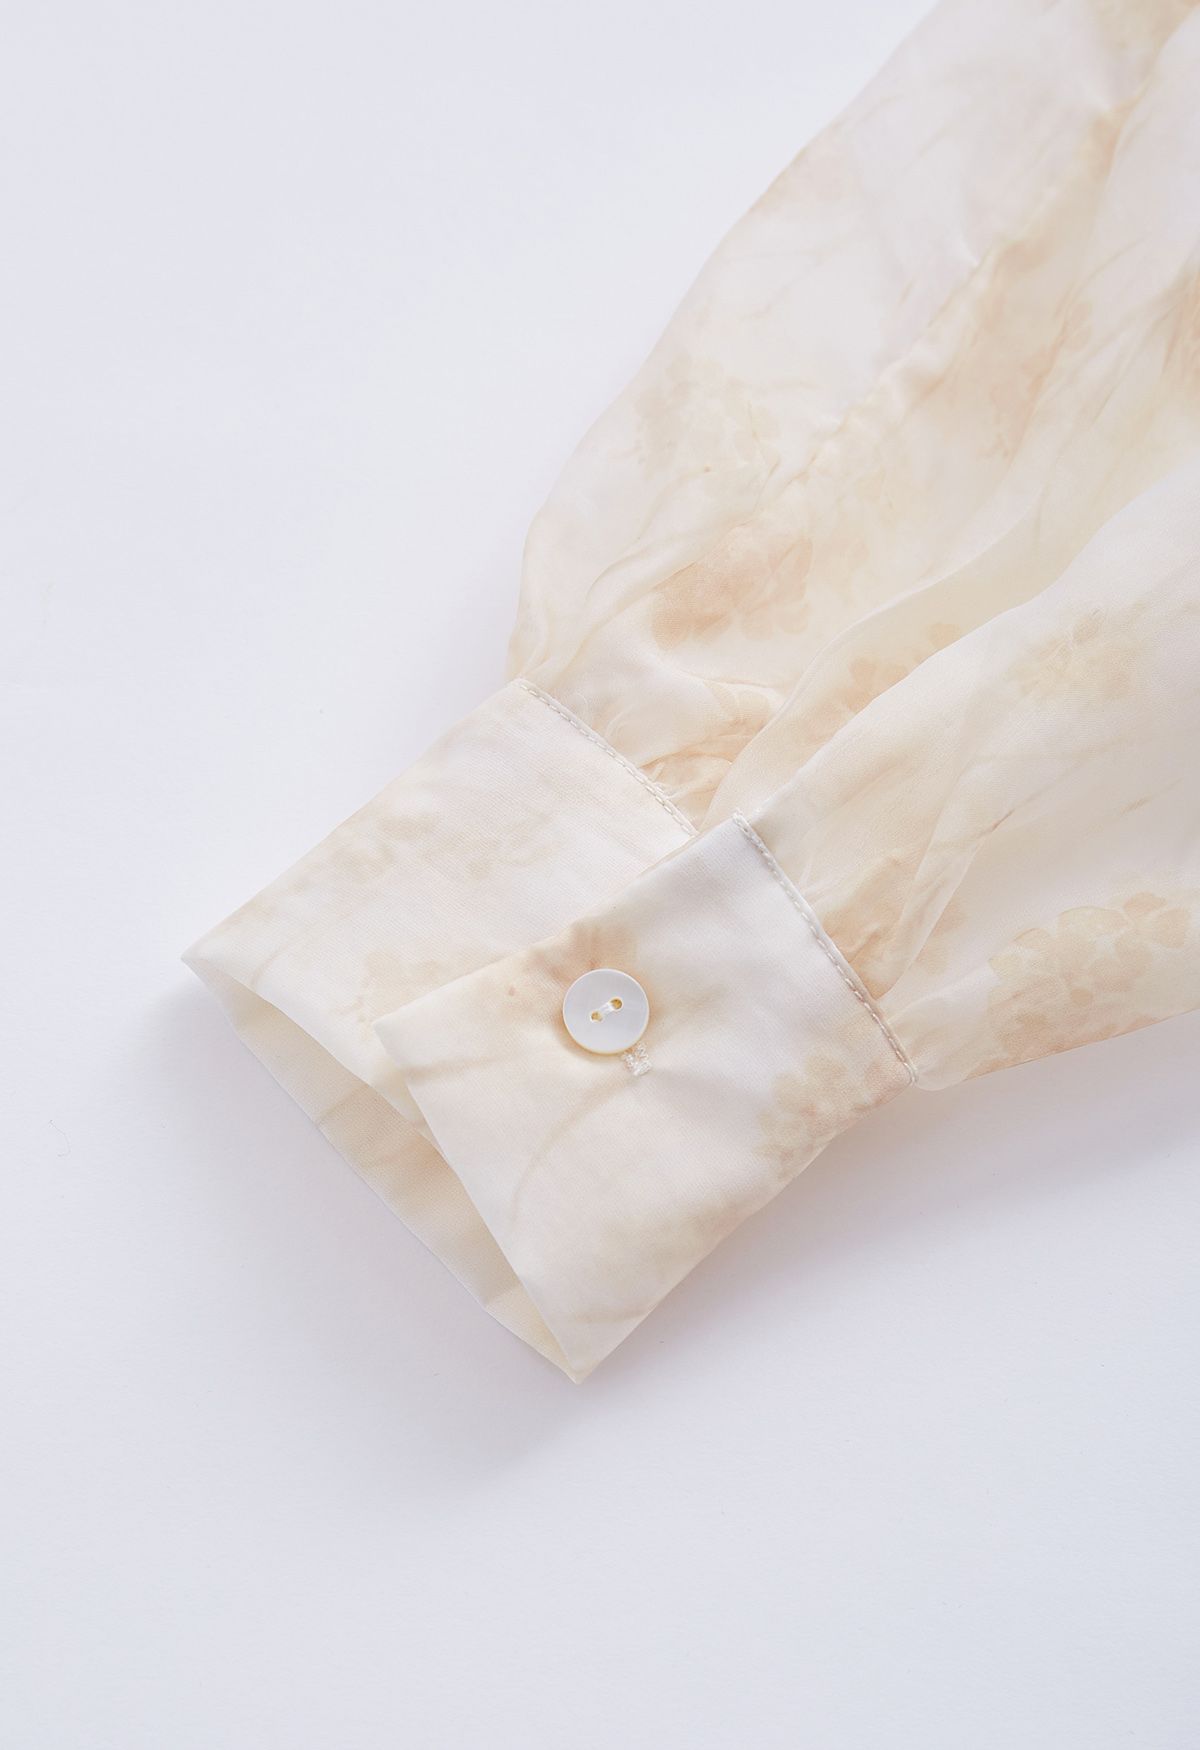 Camisa semitransparente floral aquarela com laço em damasco